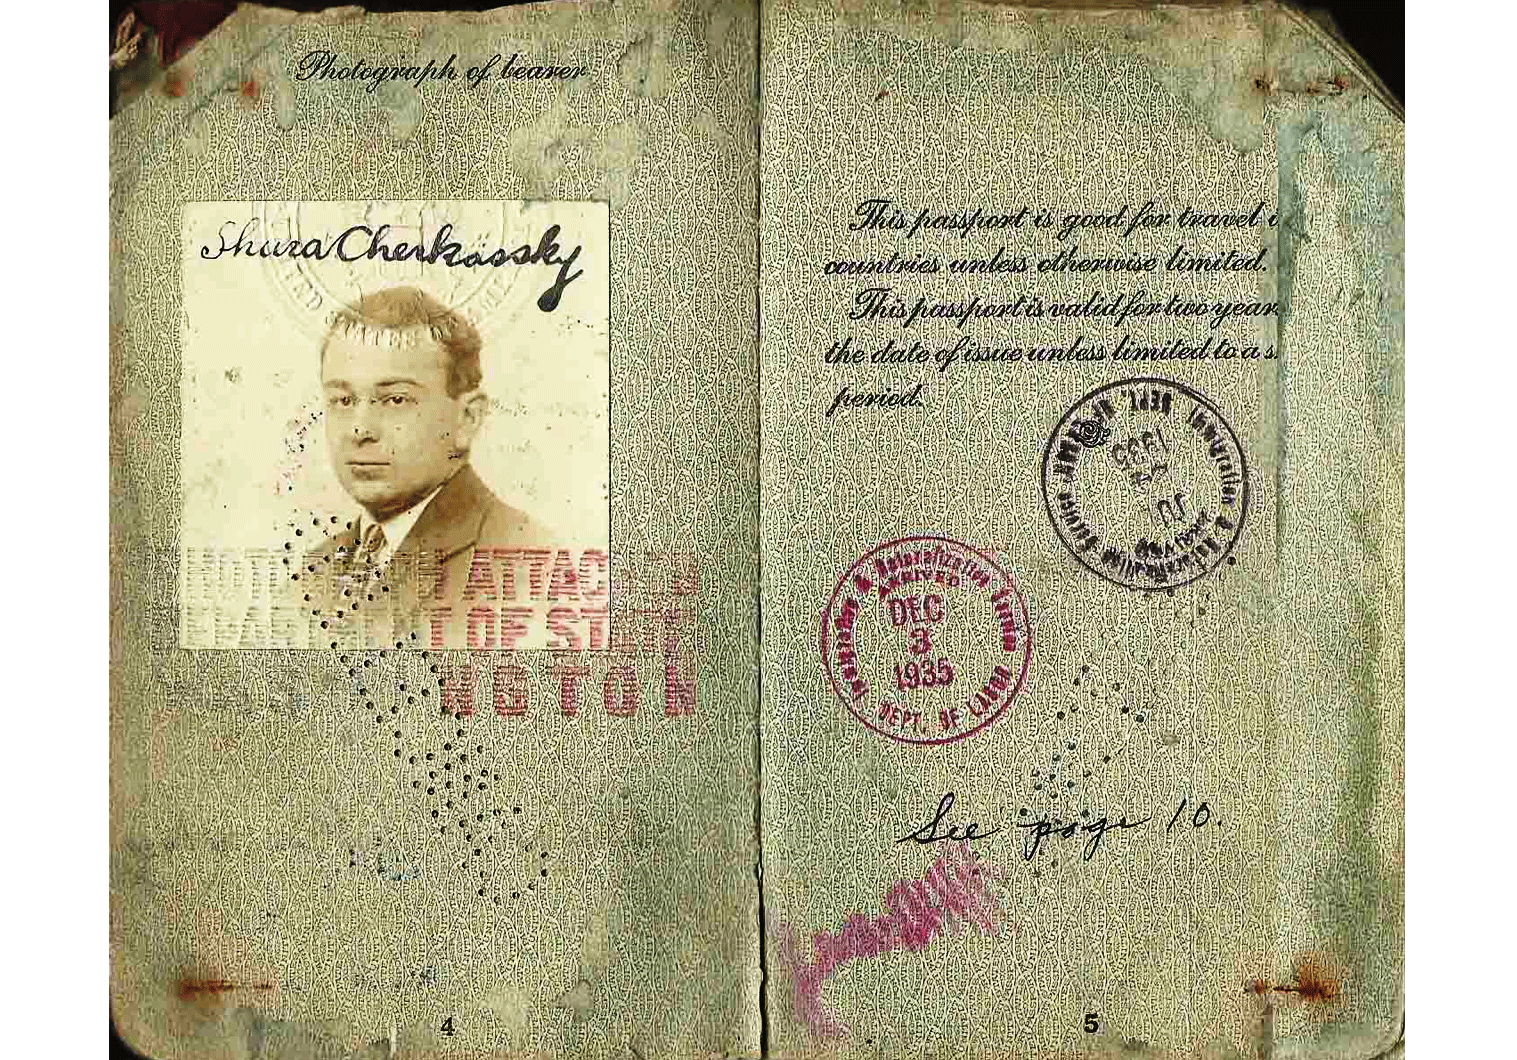 Shura Cherkassky passport.